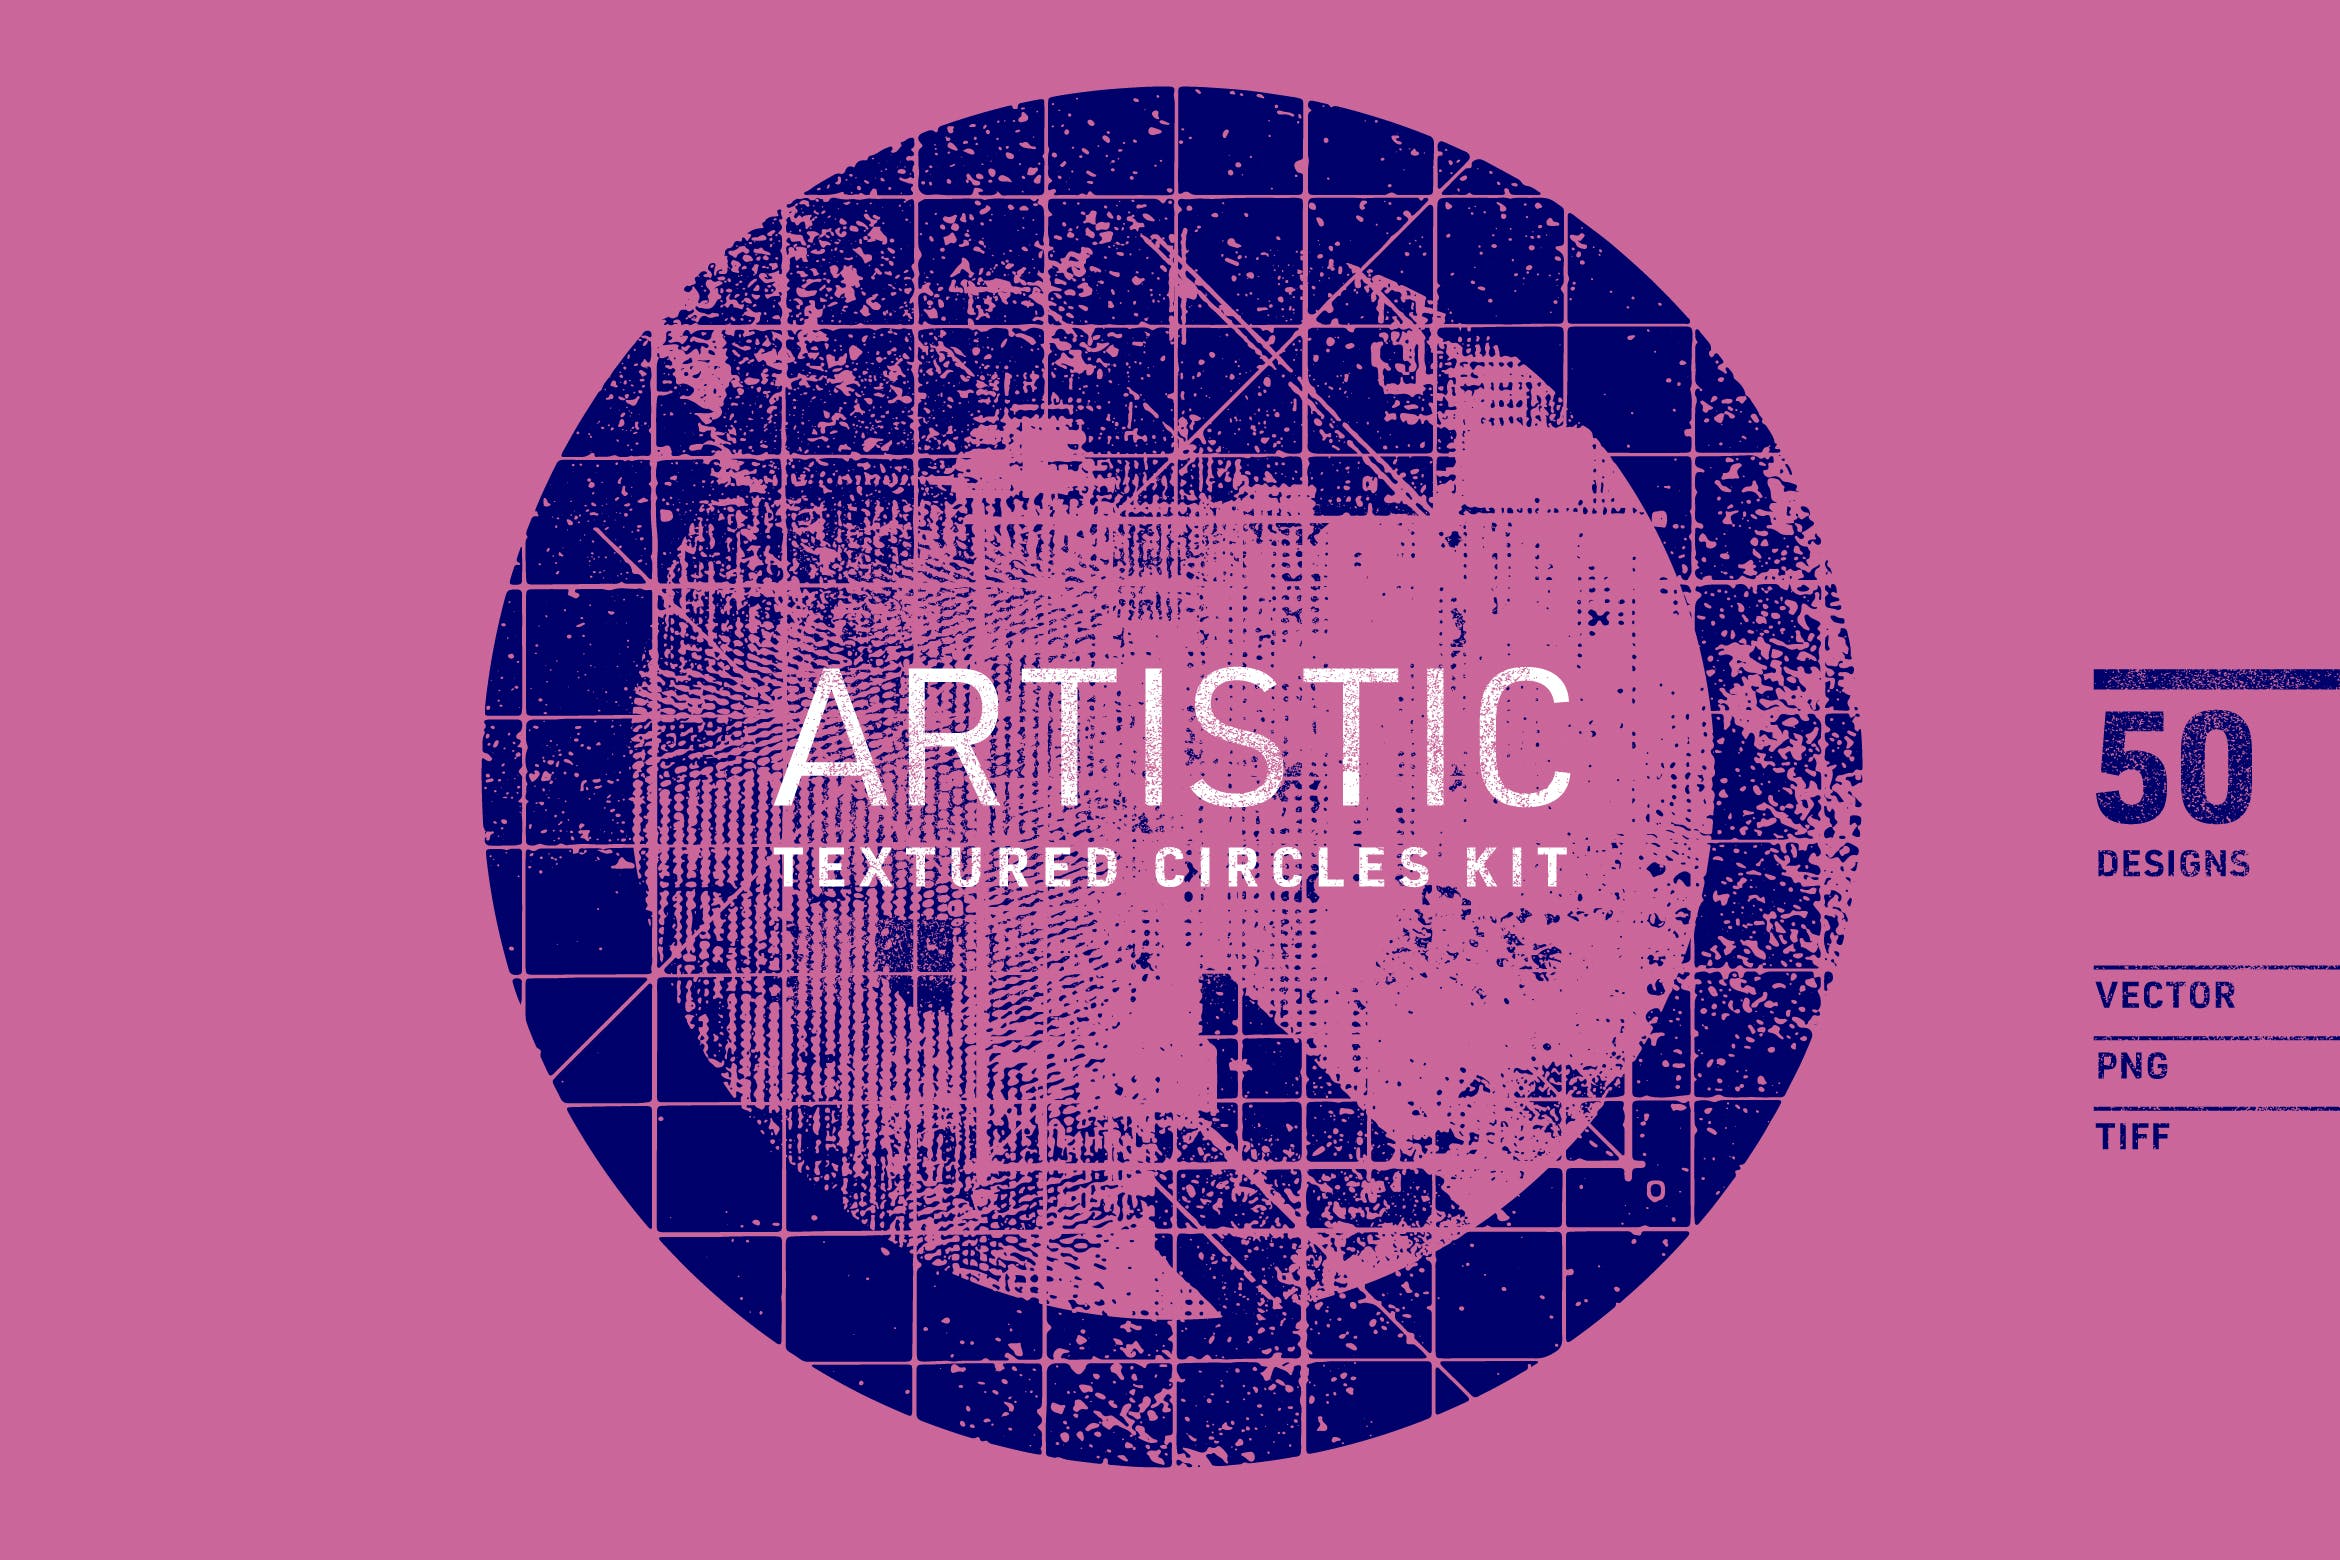 50个艺术圆形纹理套件 Artistic Textured Circles Kit 图片素材 第1张